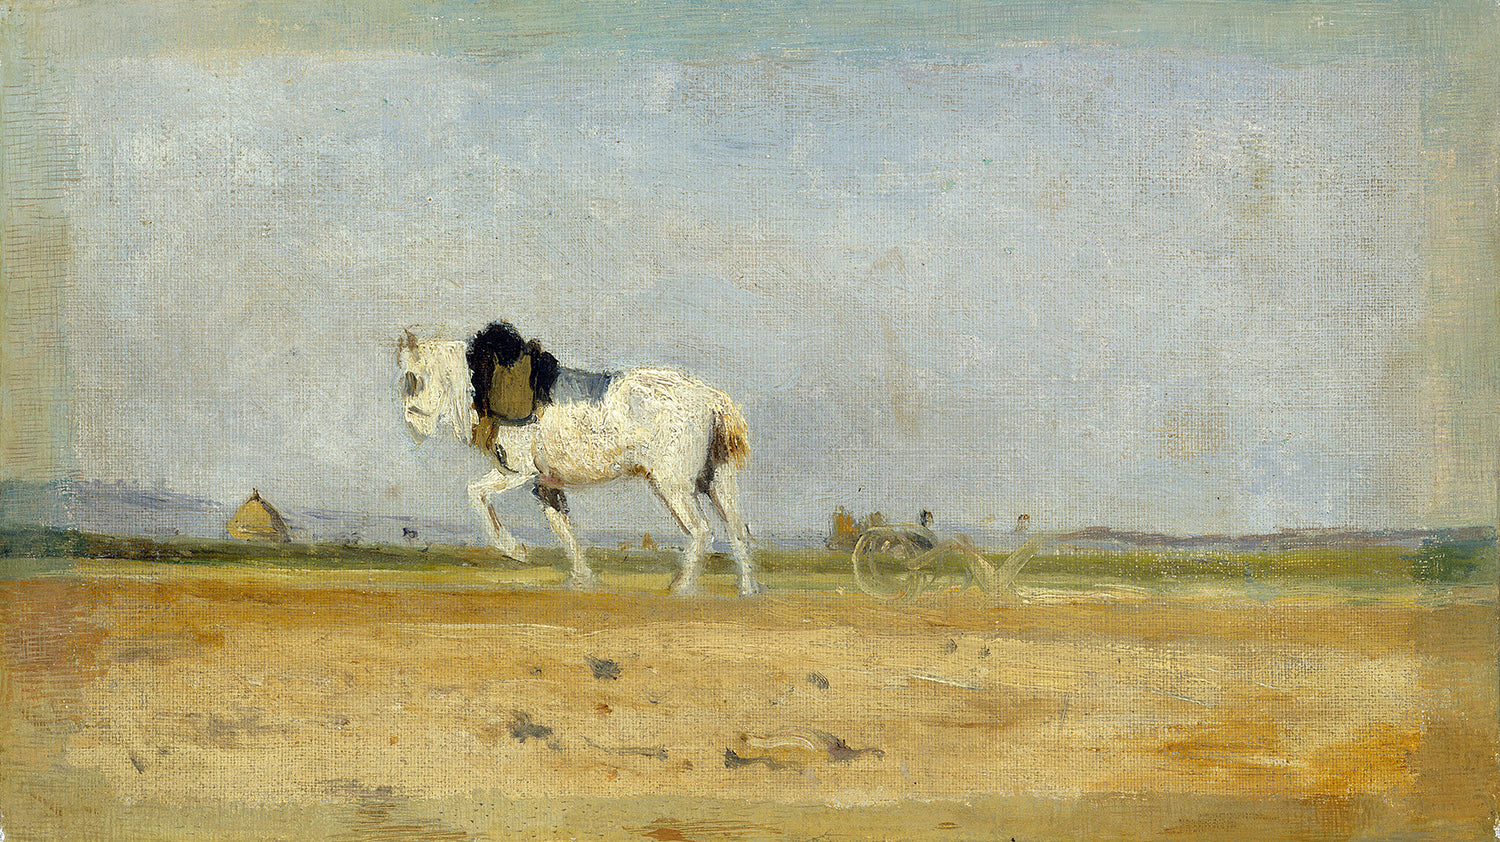 A Plow Horse in a Field by Stanislas LŽpine Art Print